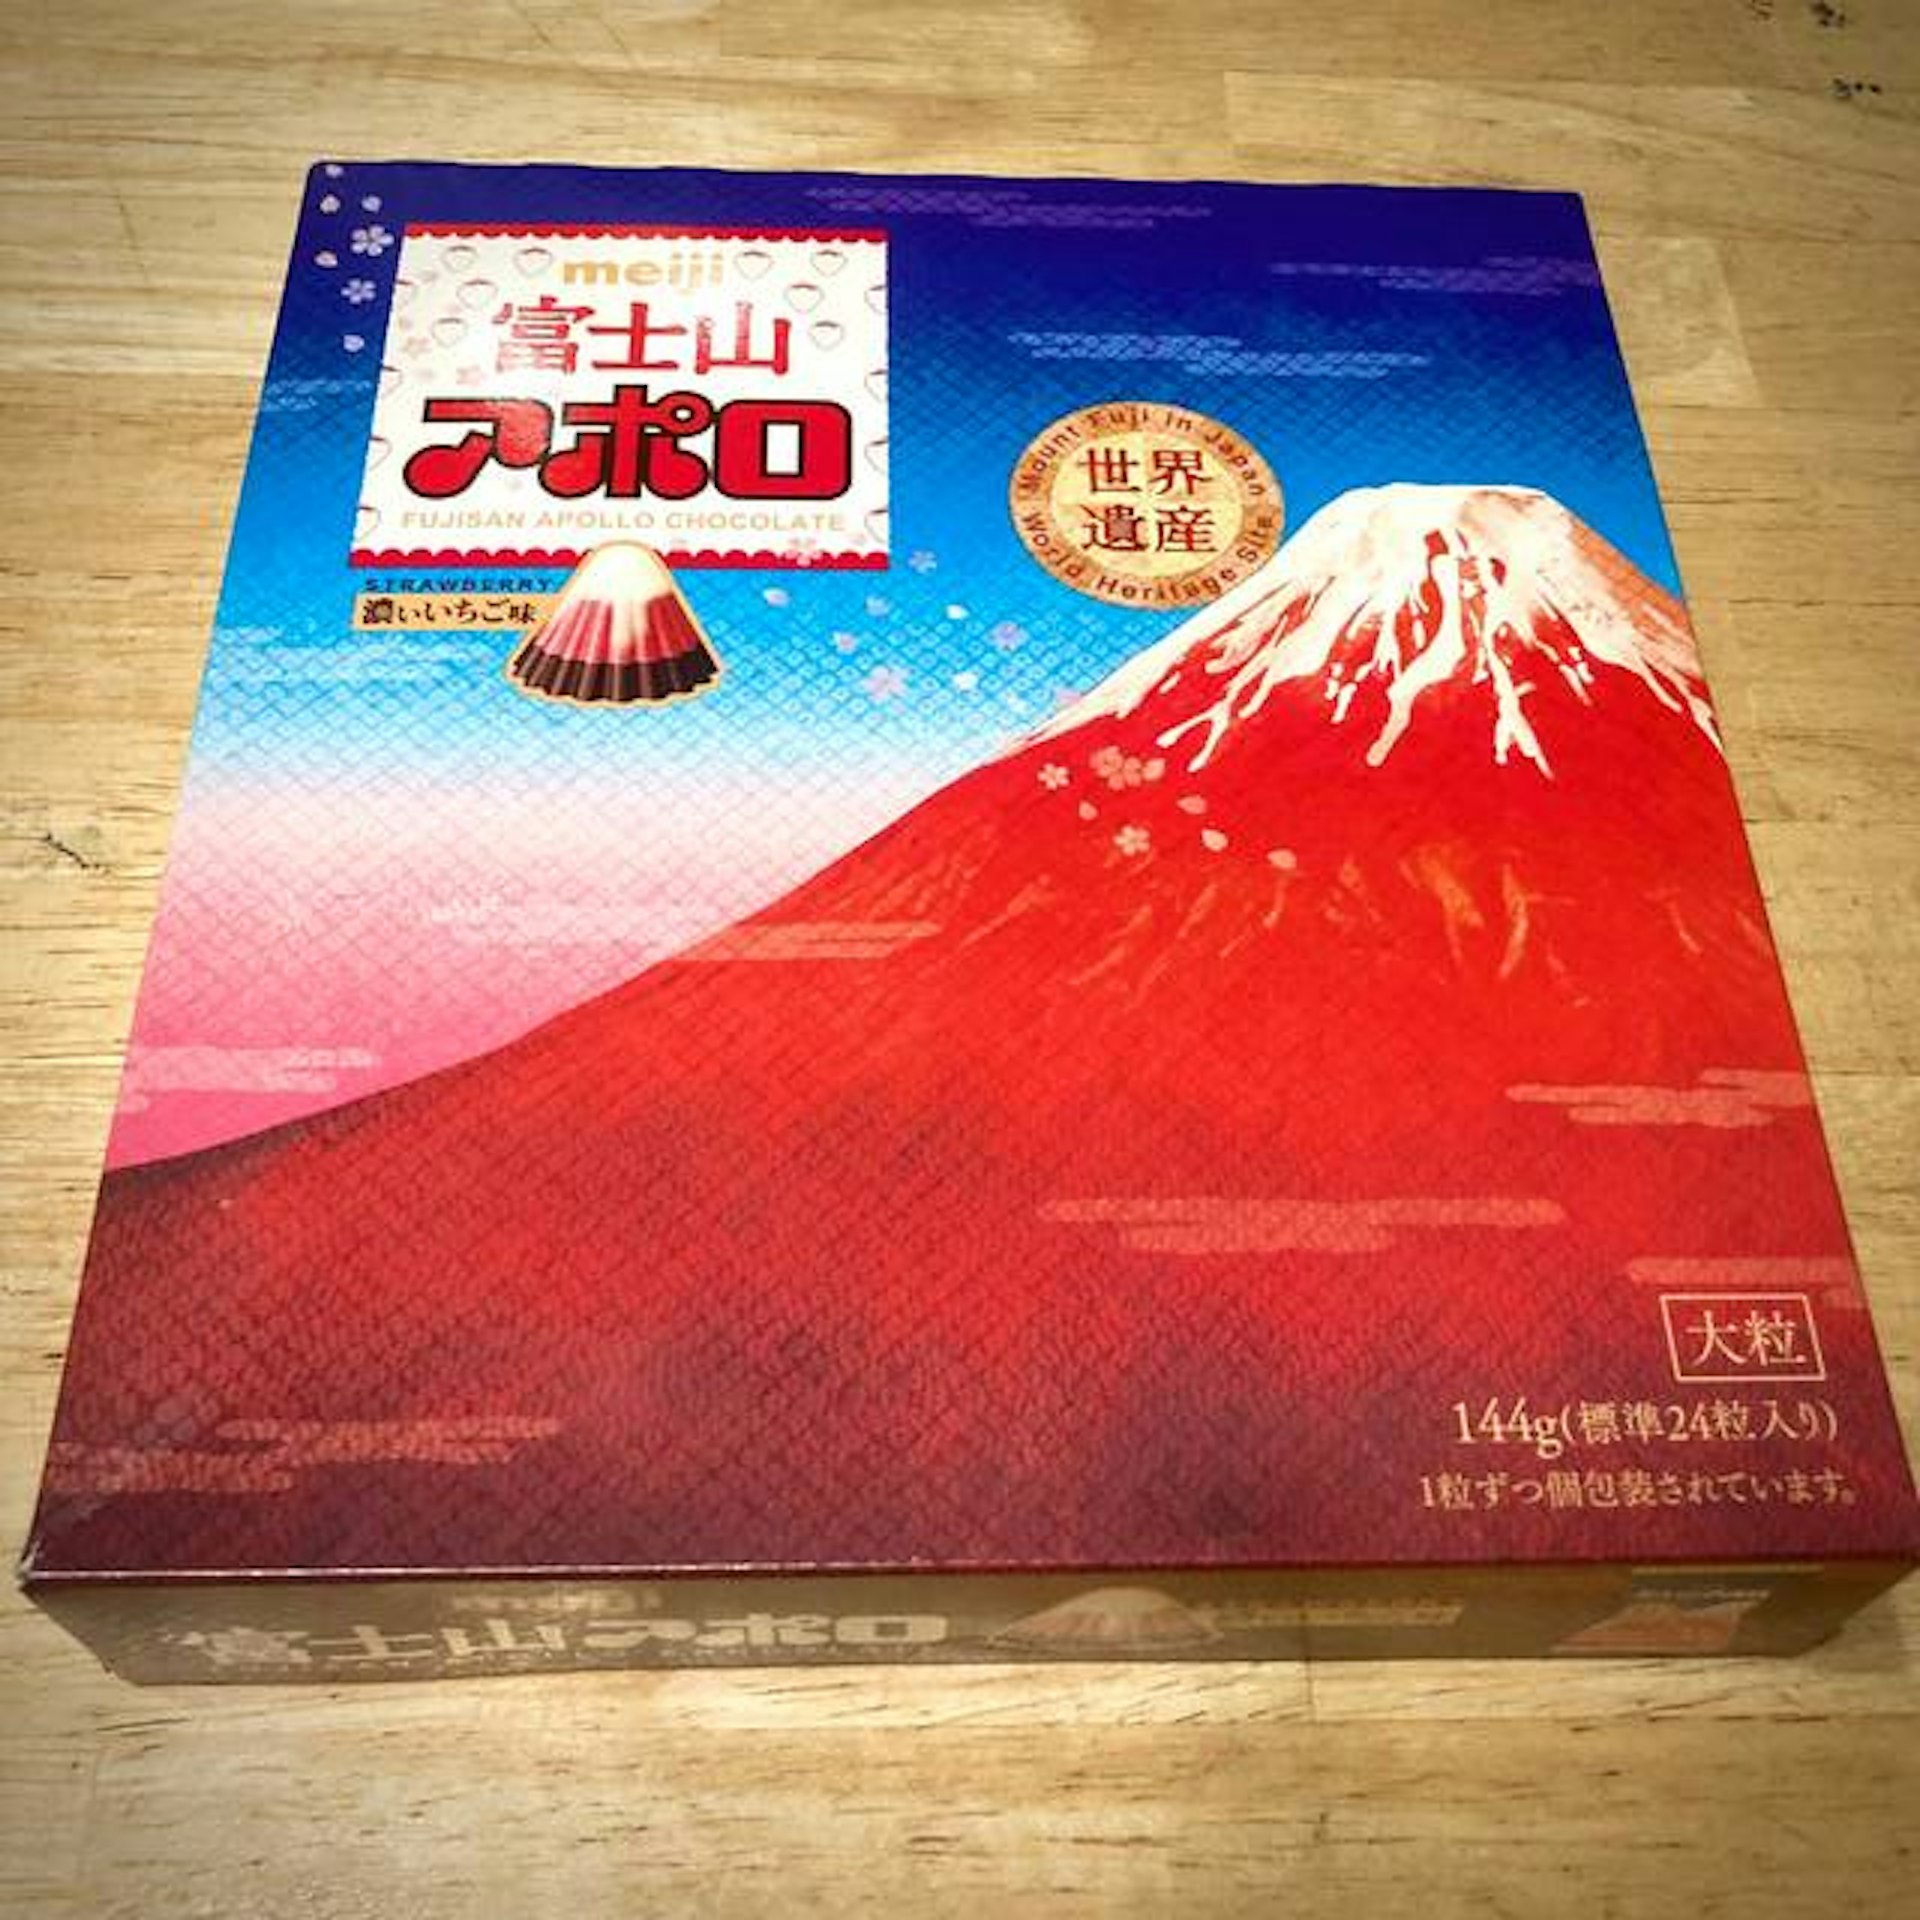 Meiji &#8220;Fuji Apollo&#8221; box and Yamanashi and Shizuoka